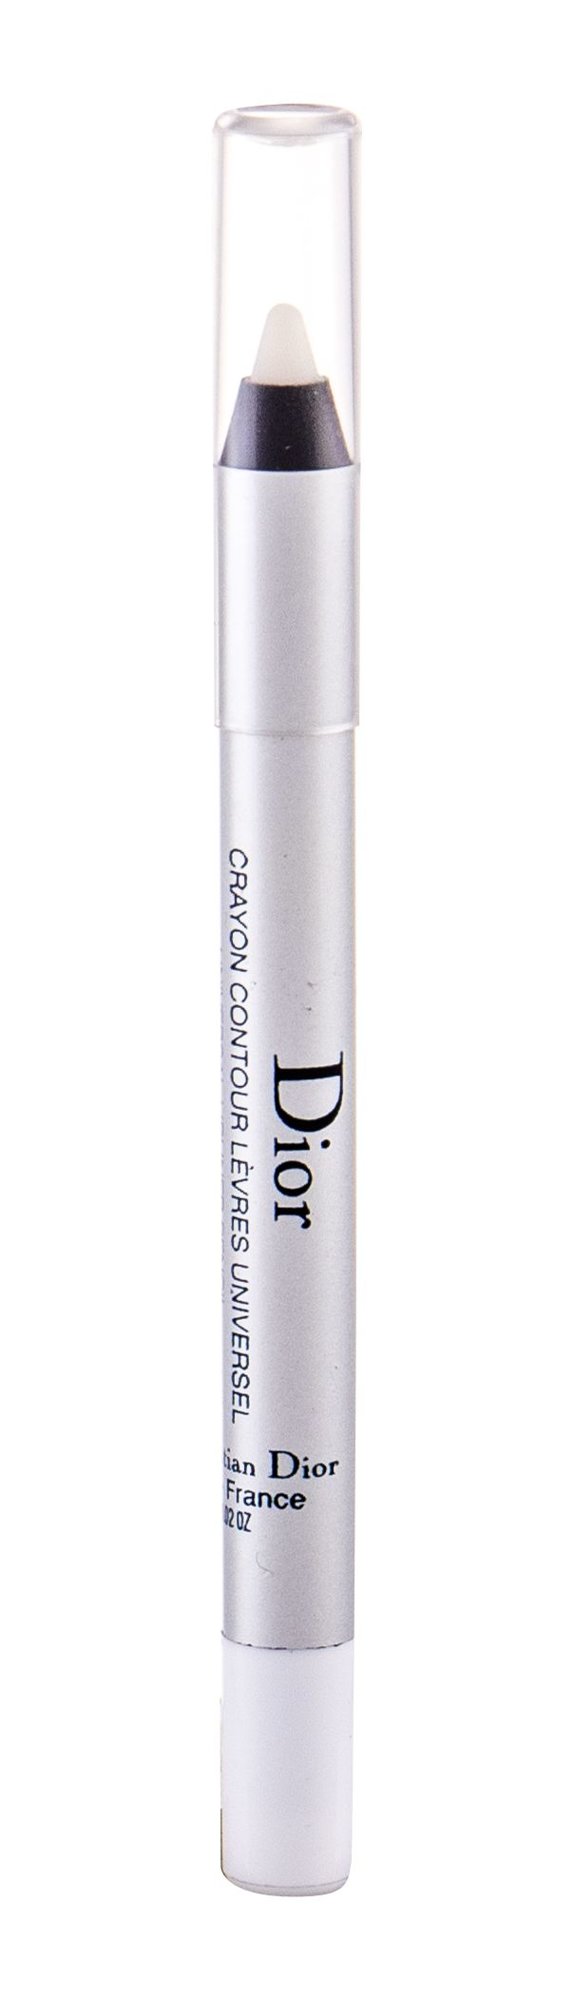 Christian Dior Lipliner Pencil 0,8g lūpų pieštukas Testeris